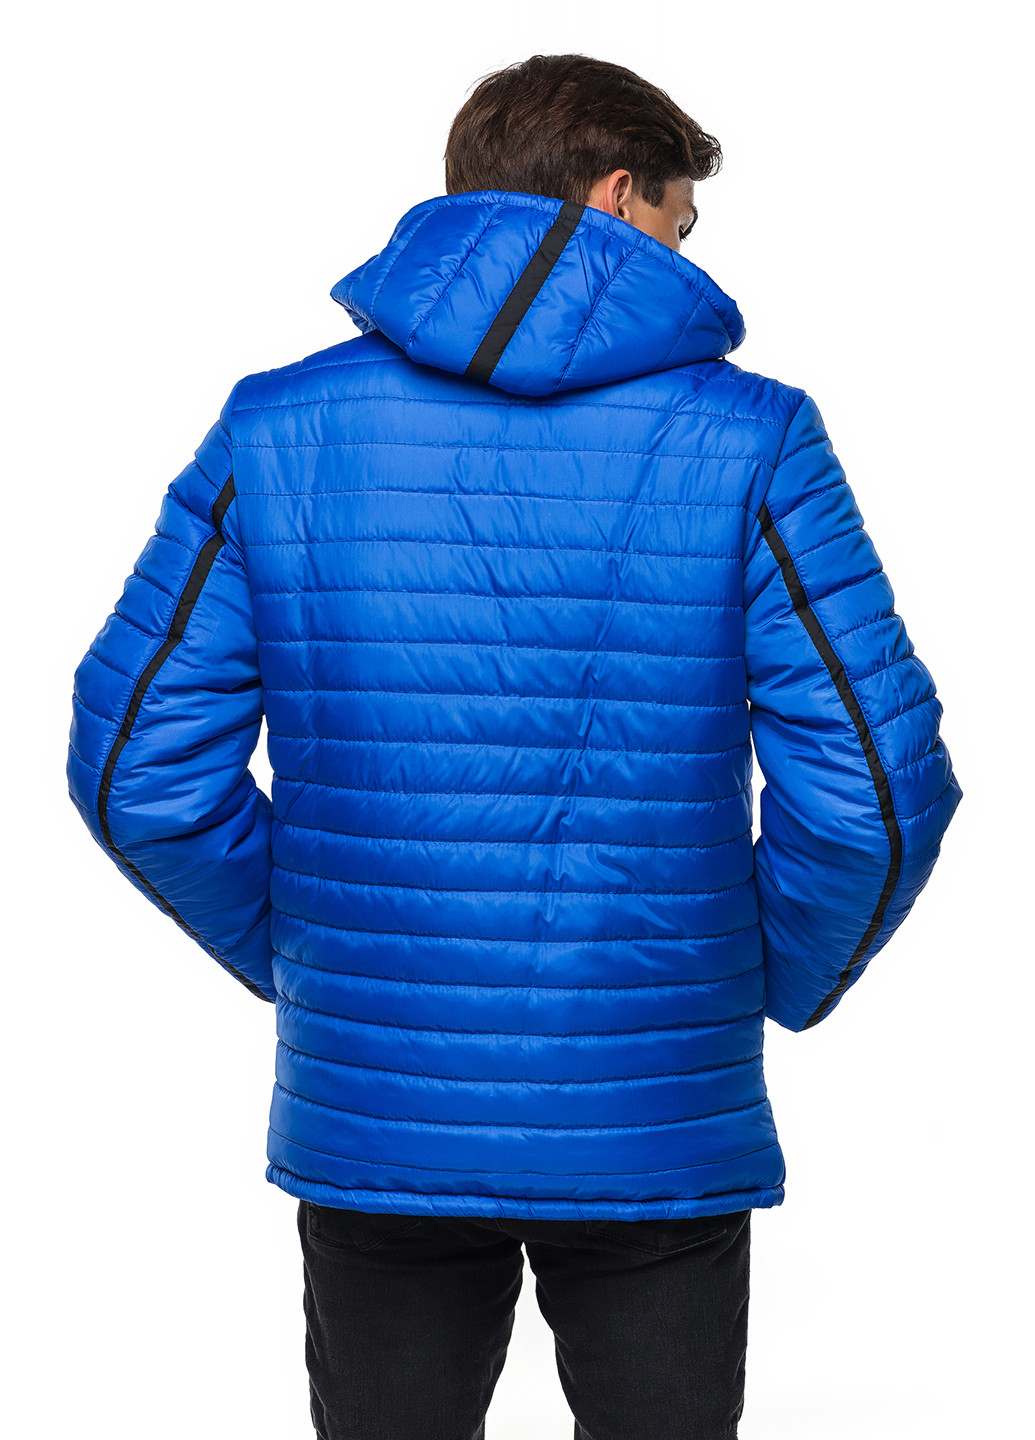 Синя зимня куртка Кариант